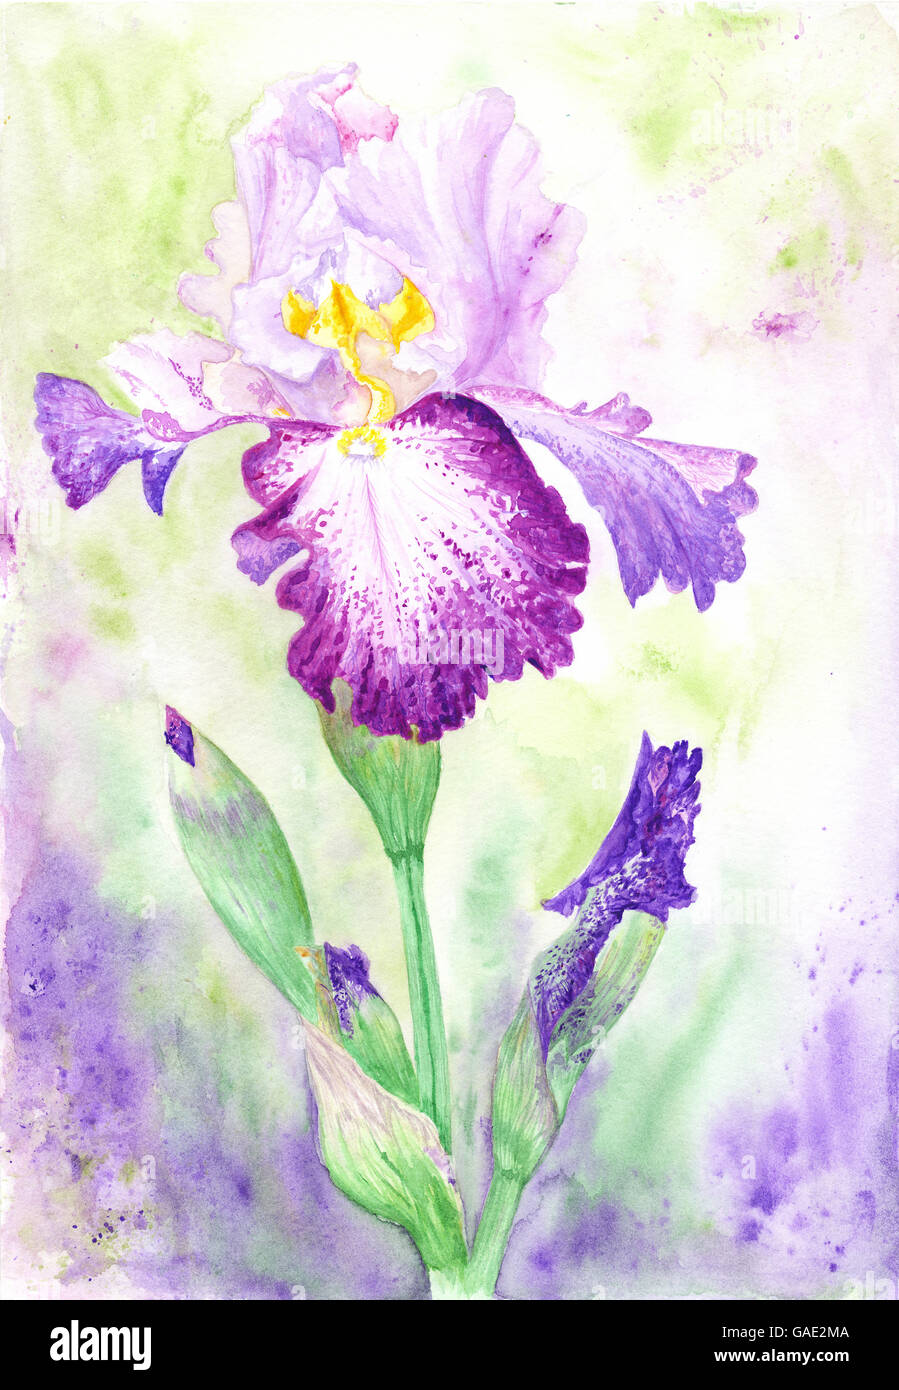 Di alta qualità ricche di dettagli dipinte a mano e fioritura della pittura di fiori Foto Stock